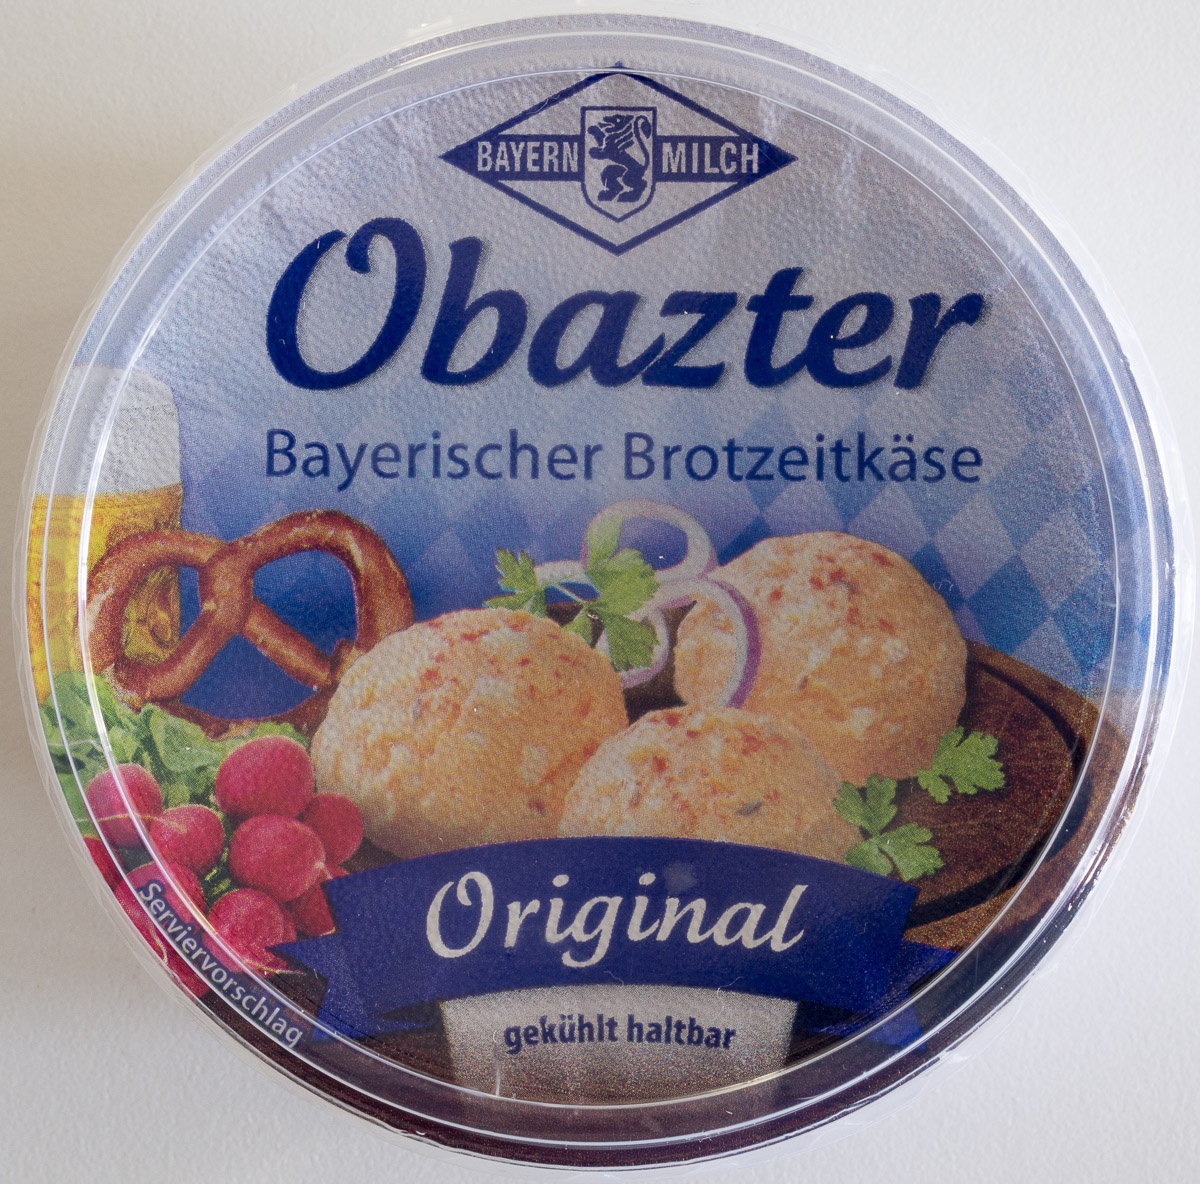 Obazter - Product - de